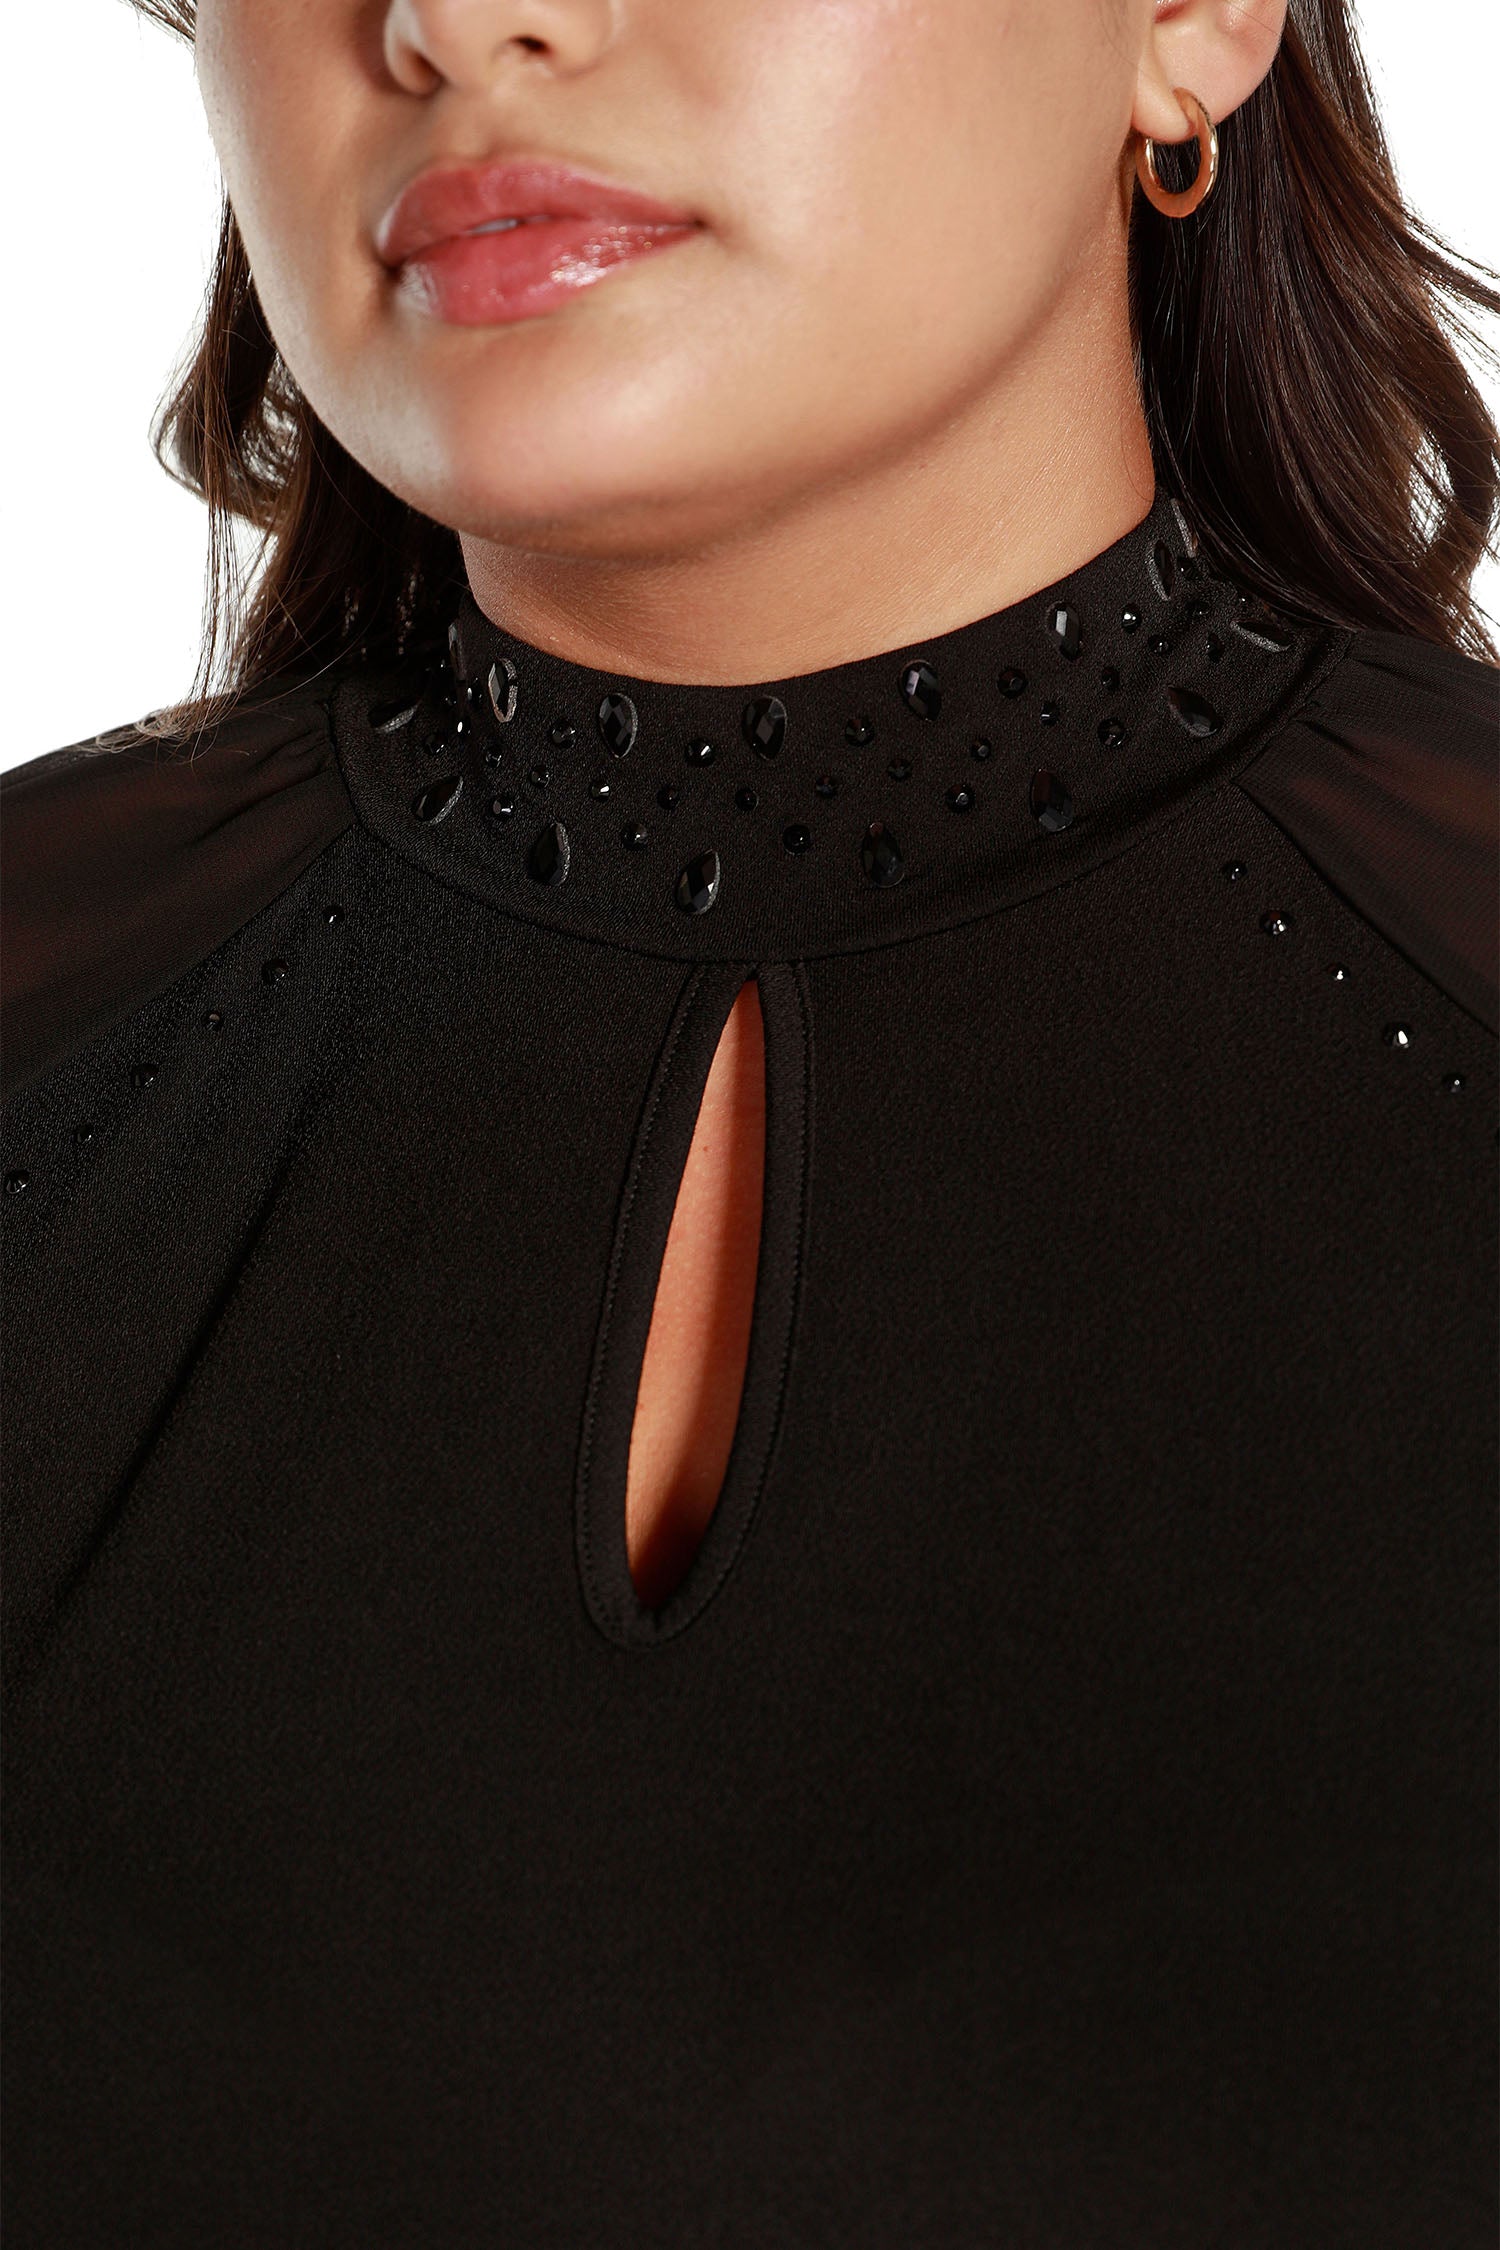 Túnica tipo jersey para mujer con mangas largas transparentes, cuello simulado enjoyado y abertura frontal para cerradura | con curvas